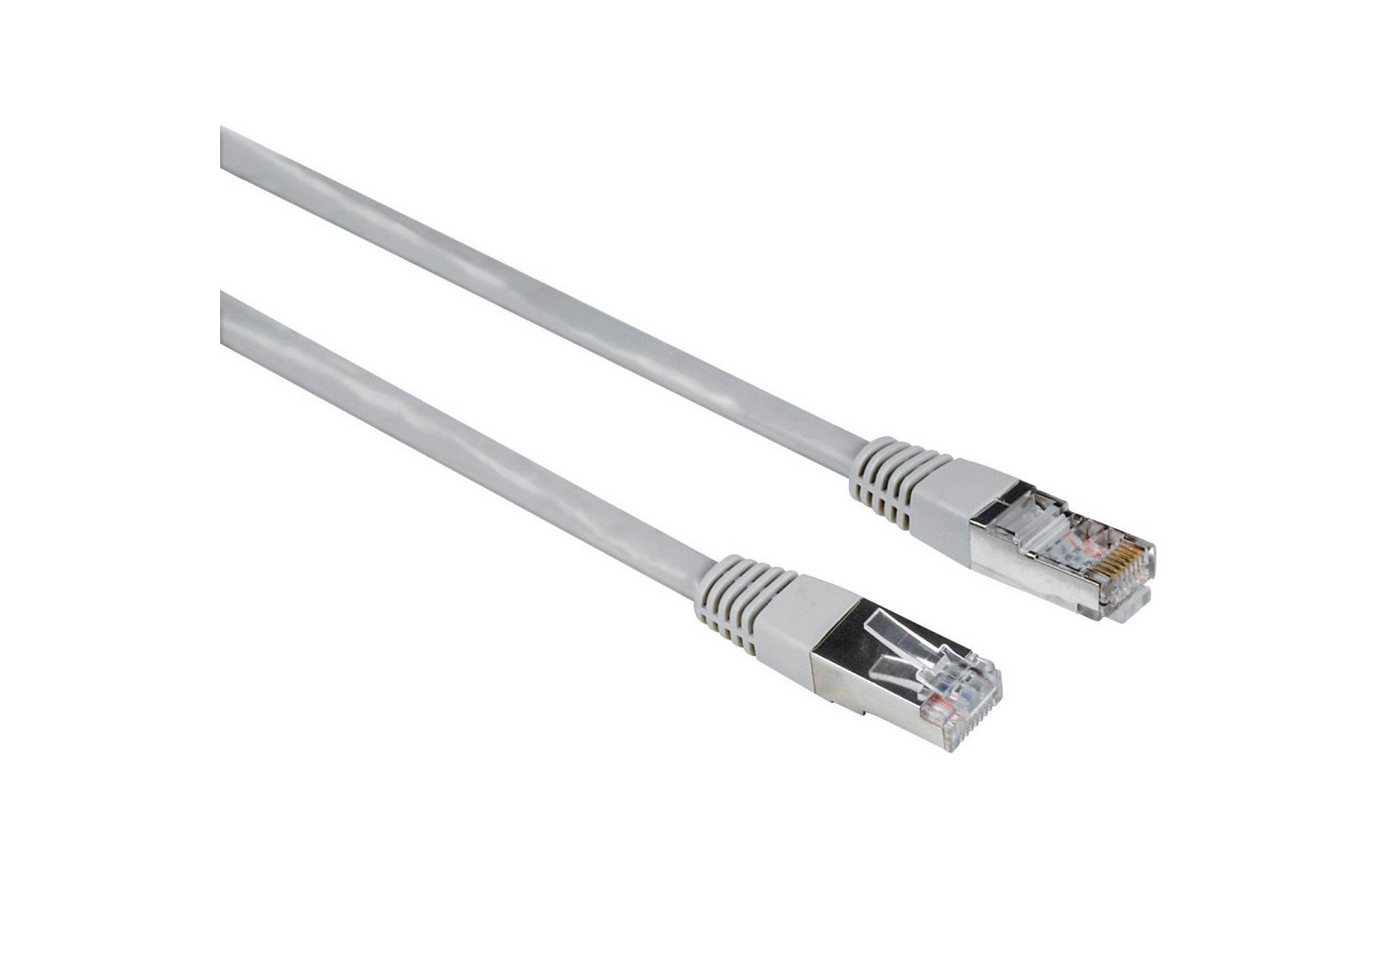 Hama 10m Netzwerk-Kabel Cat5e UTP Lan-Kabel Grau LAN-Kabel, RJ45, Kein (1000 cm), Patch-Kabel Cat 5e Gigabit Ethernet von Hama